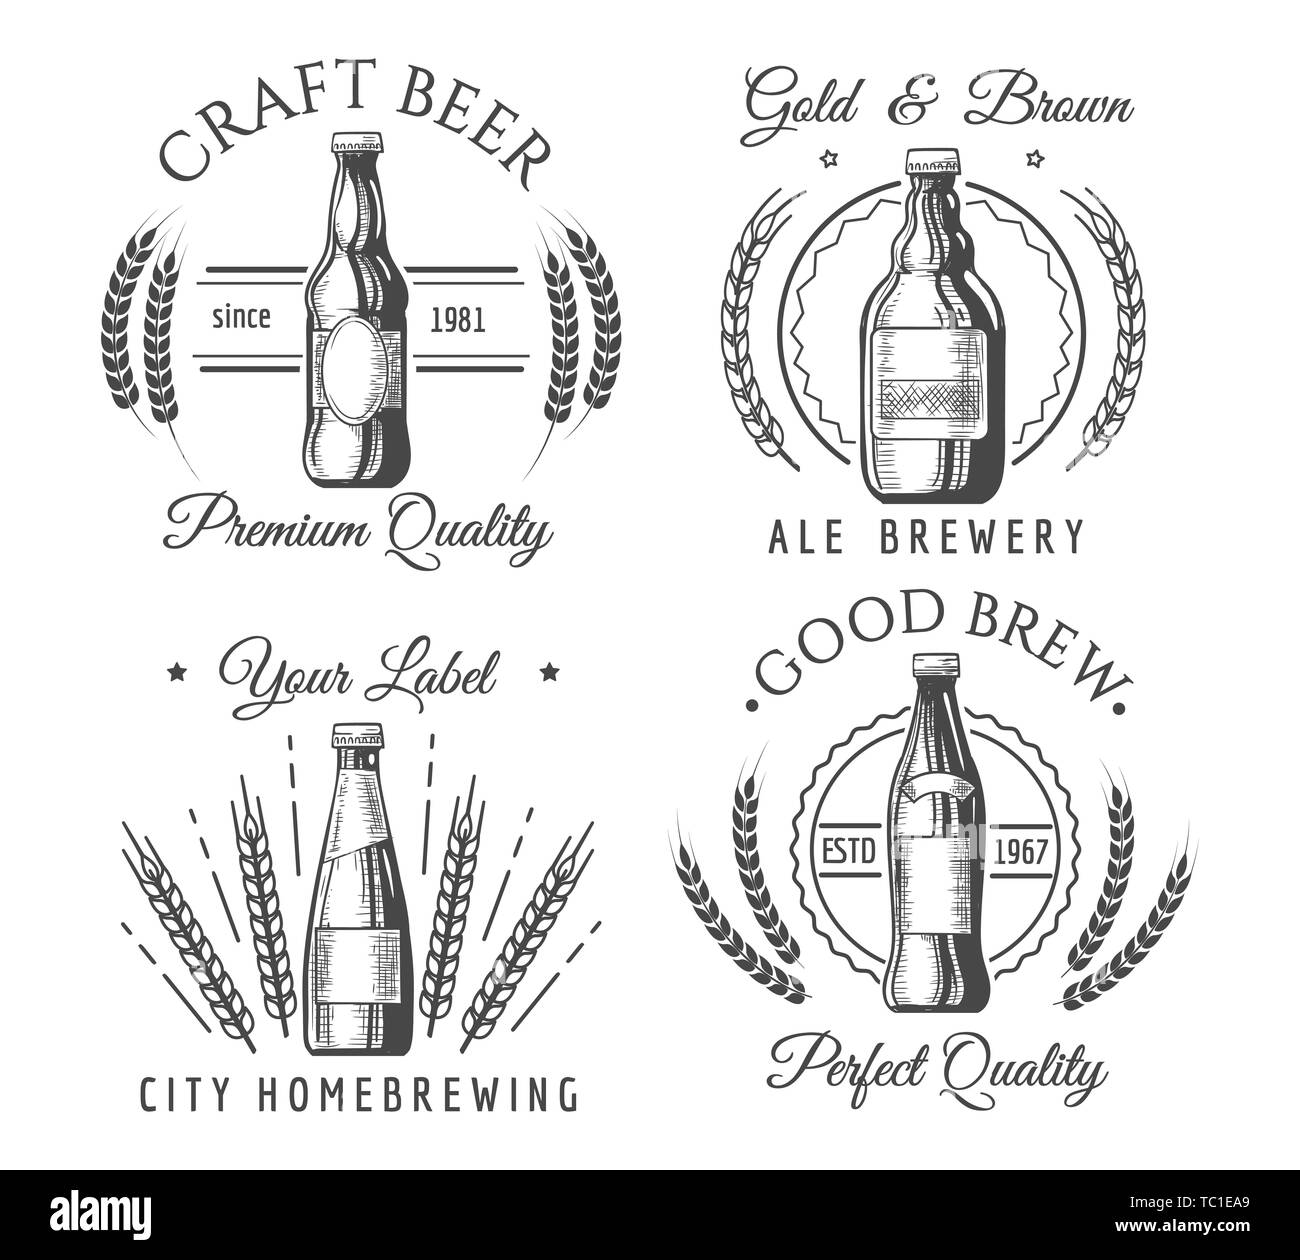 Handwerkliche Handwerk Bier Etiketten. Handarbeit Handarbeit